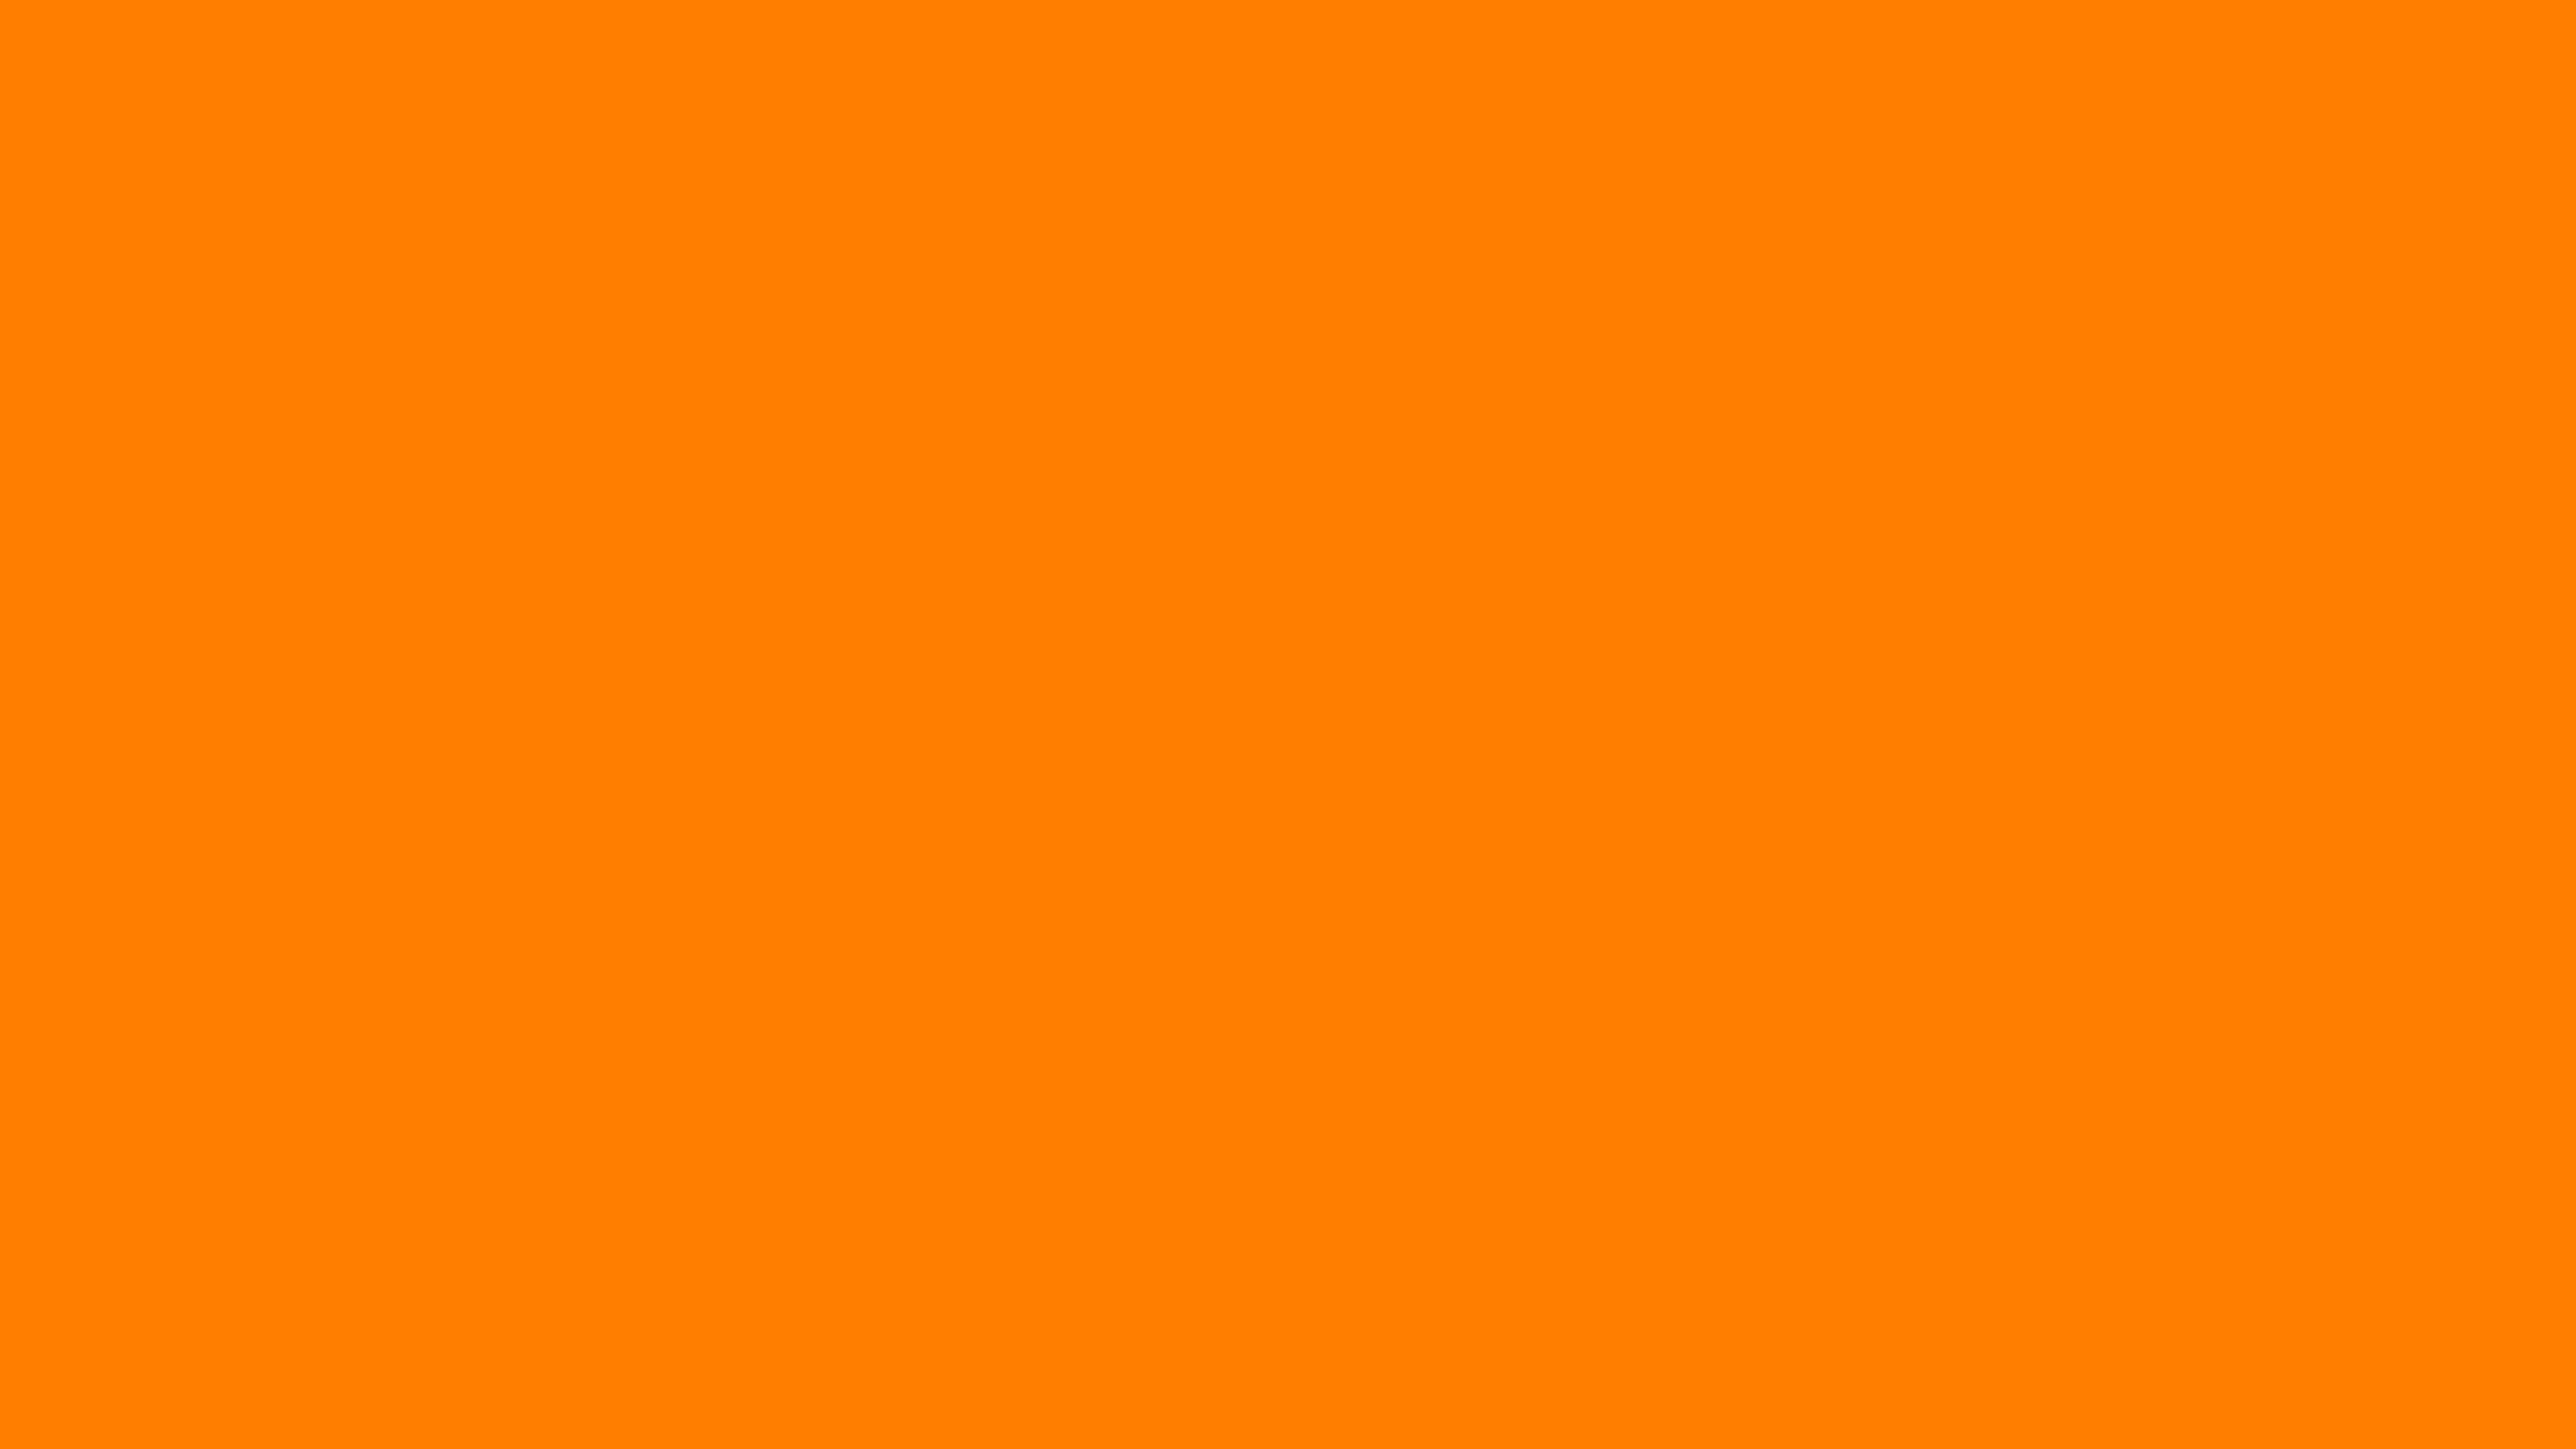 Nền màu cam nâu với kích thước đầy đủ 3840x2160, sẽ làm cho thiết bị của bạn nổi bật với một màu sắc đậm chất nam tính. Khám phá ngay ảnh nền cam nâu miễn phí và tạo nên một không gian màn hình độc đáo của riêng bạn!